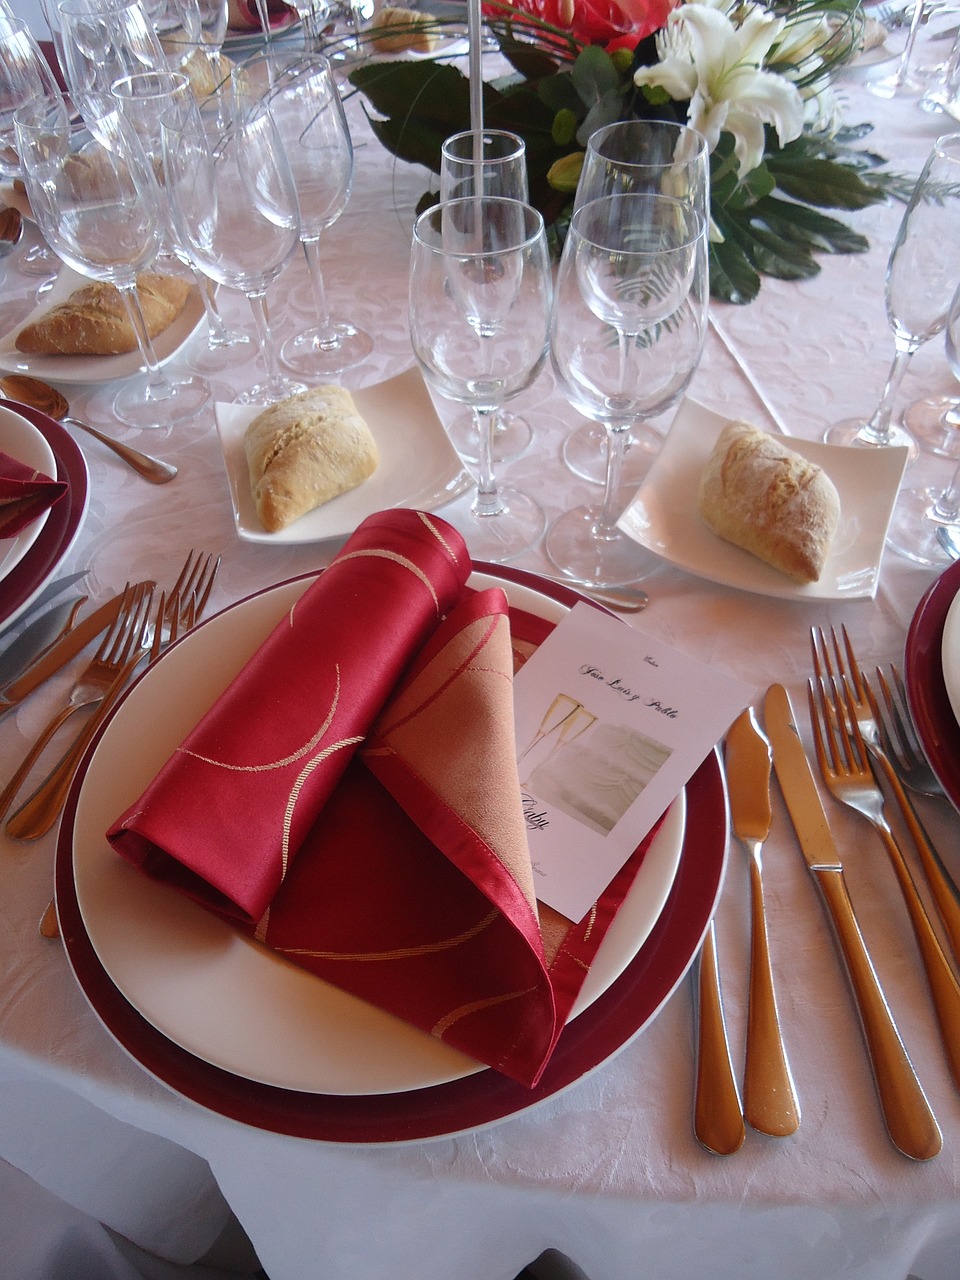 wedding-banquet-230207_1280